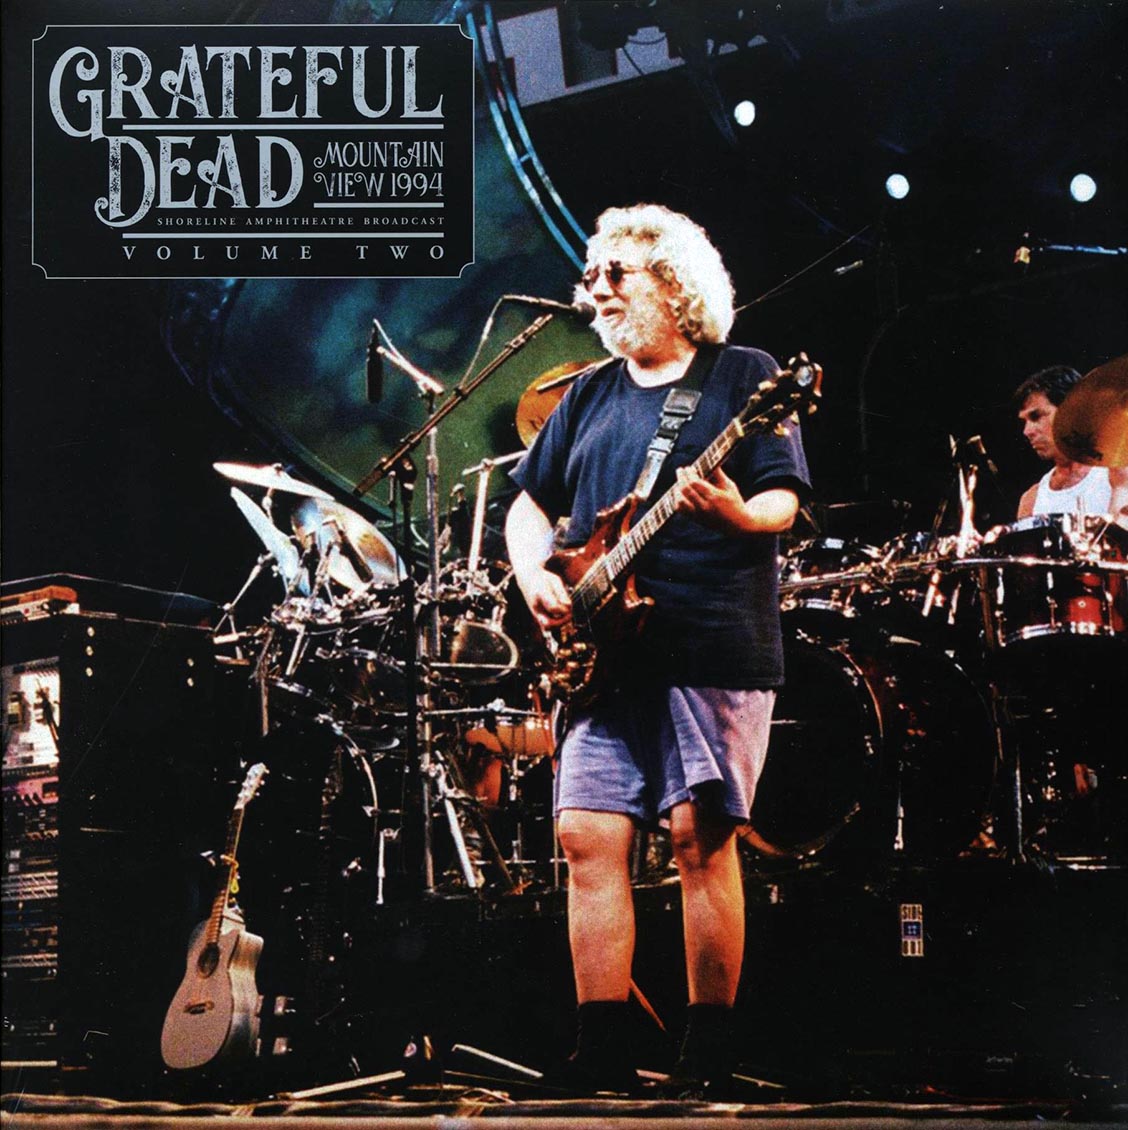 Grateful Dead - Mountain View 1994 Volume 2: Shoreline Amphitheatre Broadcast (2xLP) - Vinyl LP